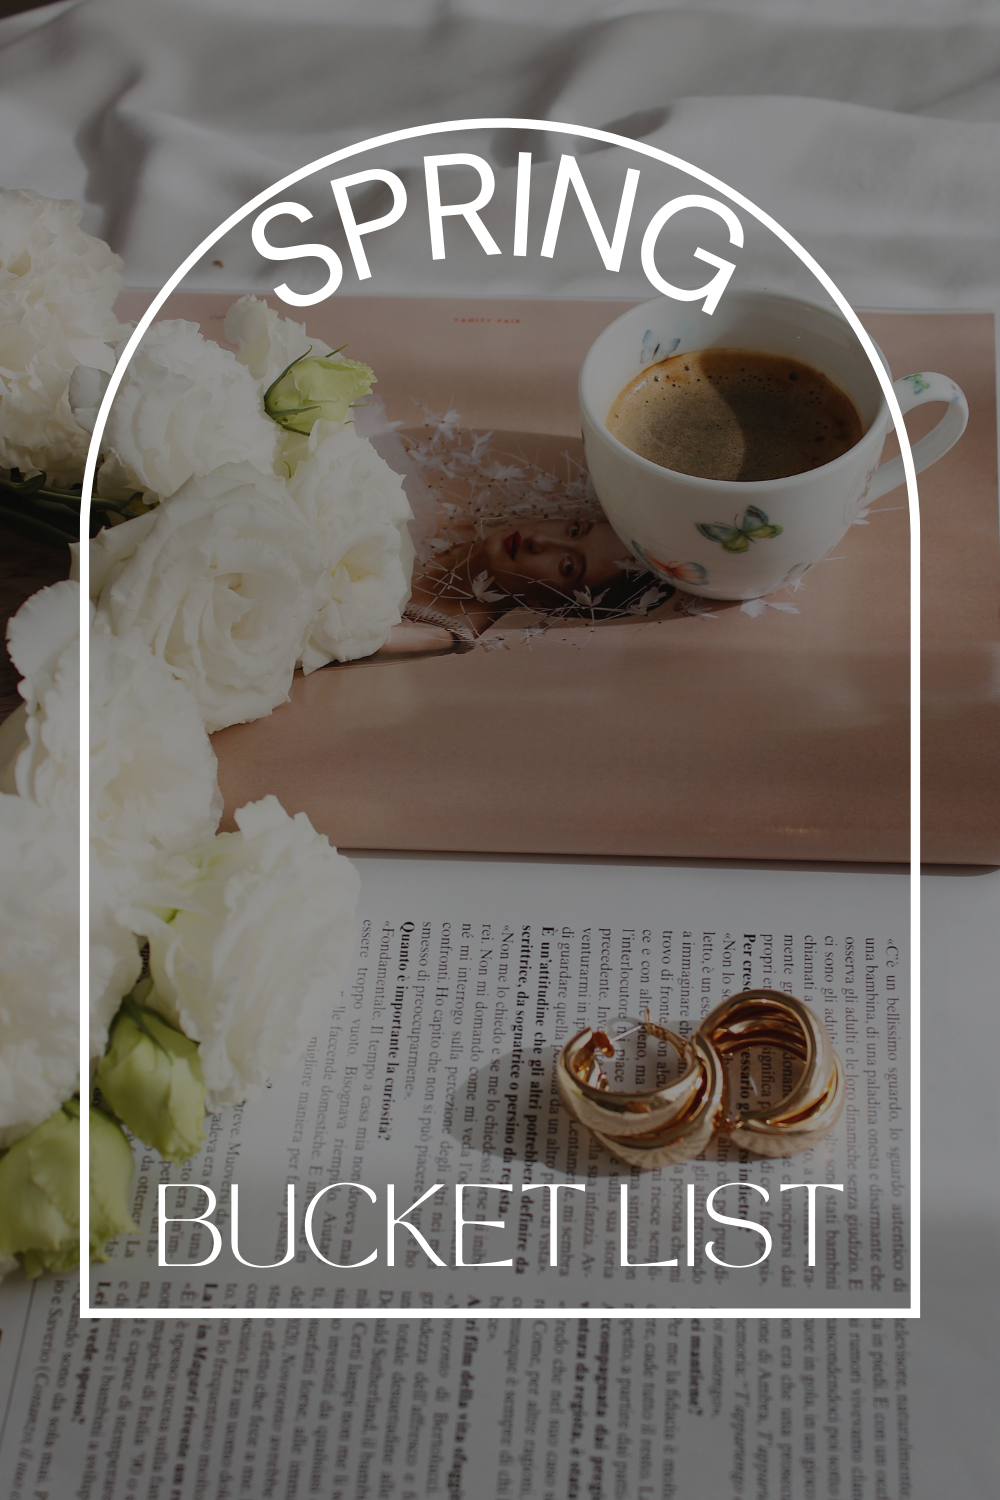 spring bucket list - 30 fun activities